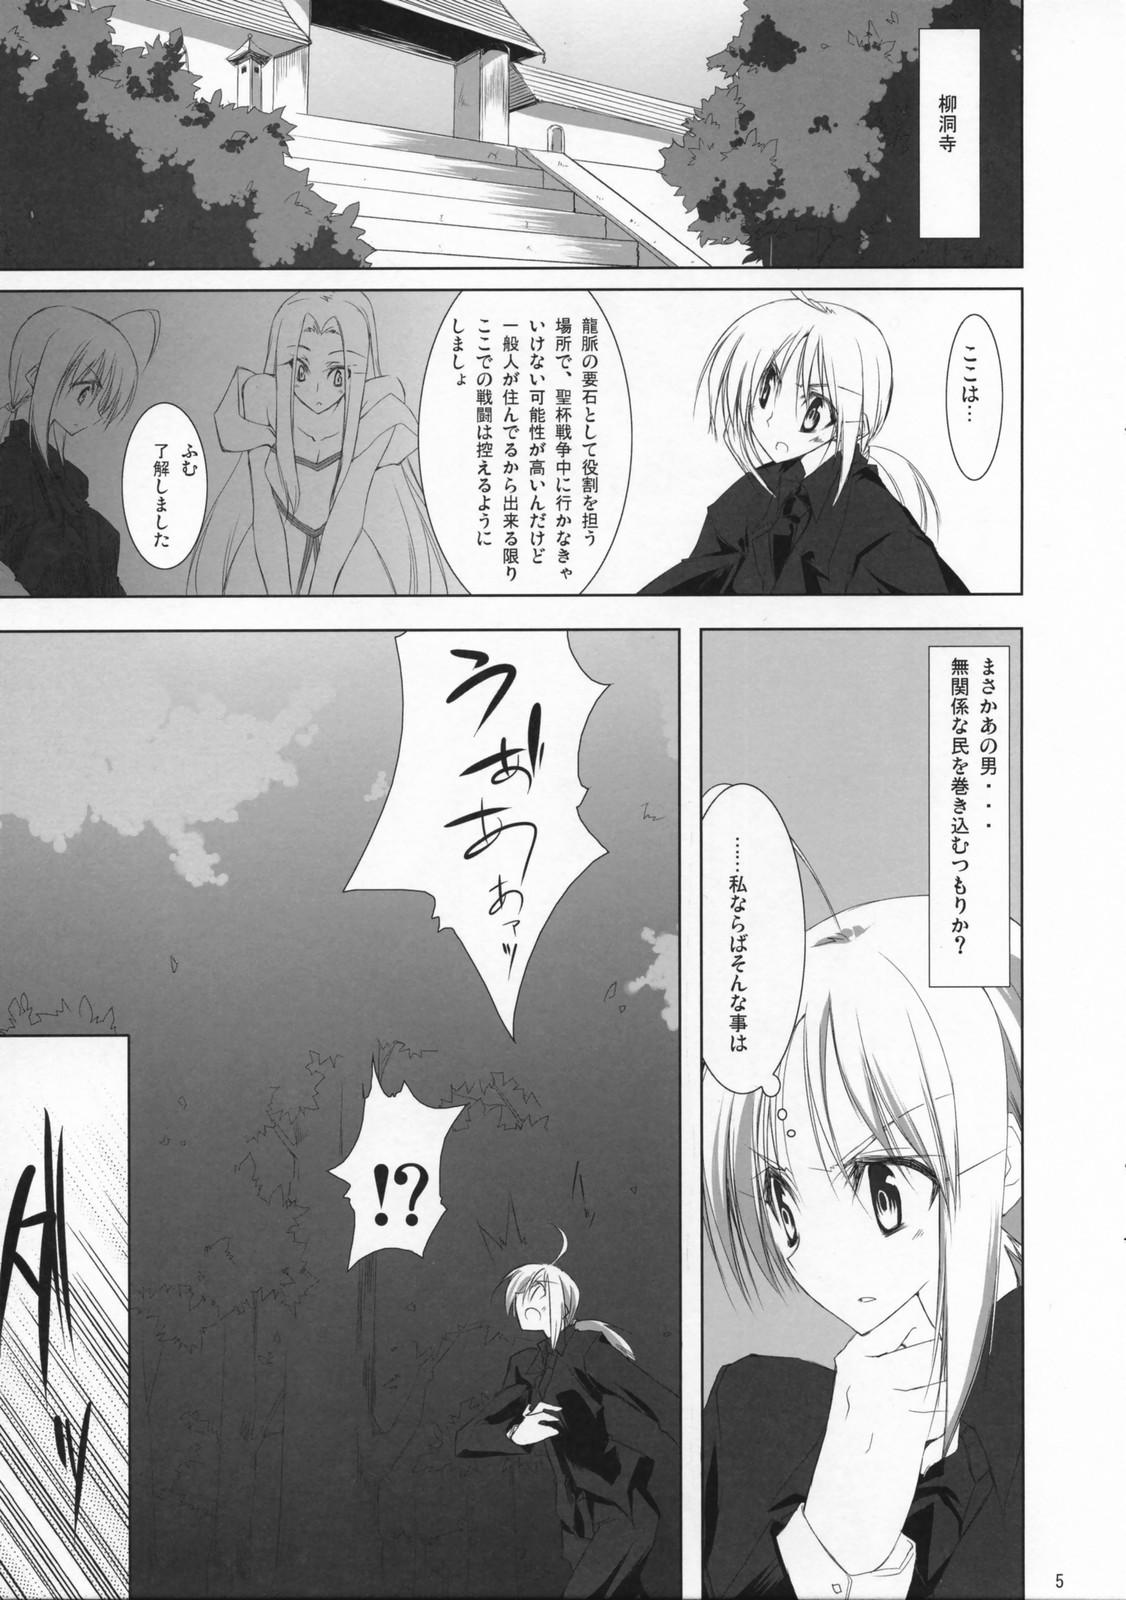 Pmv Fate/Zatto - Fate stay night Fate zero Adolescente - Page 4